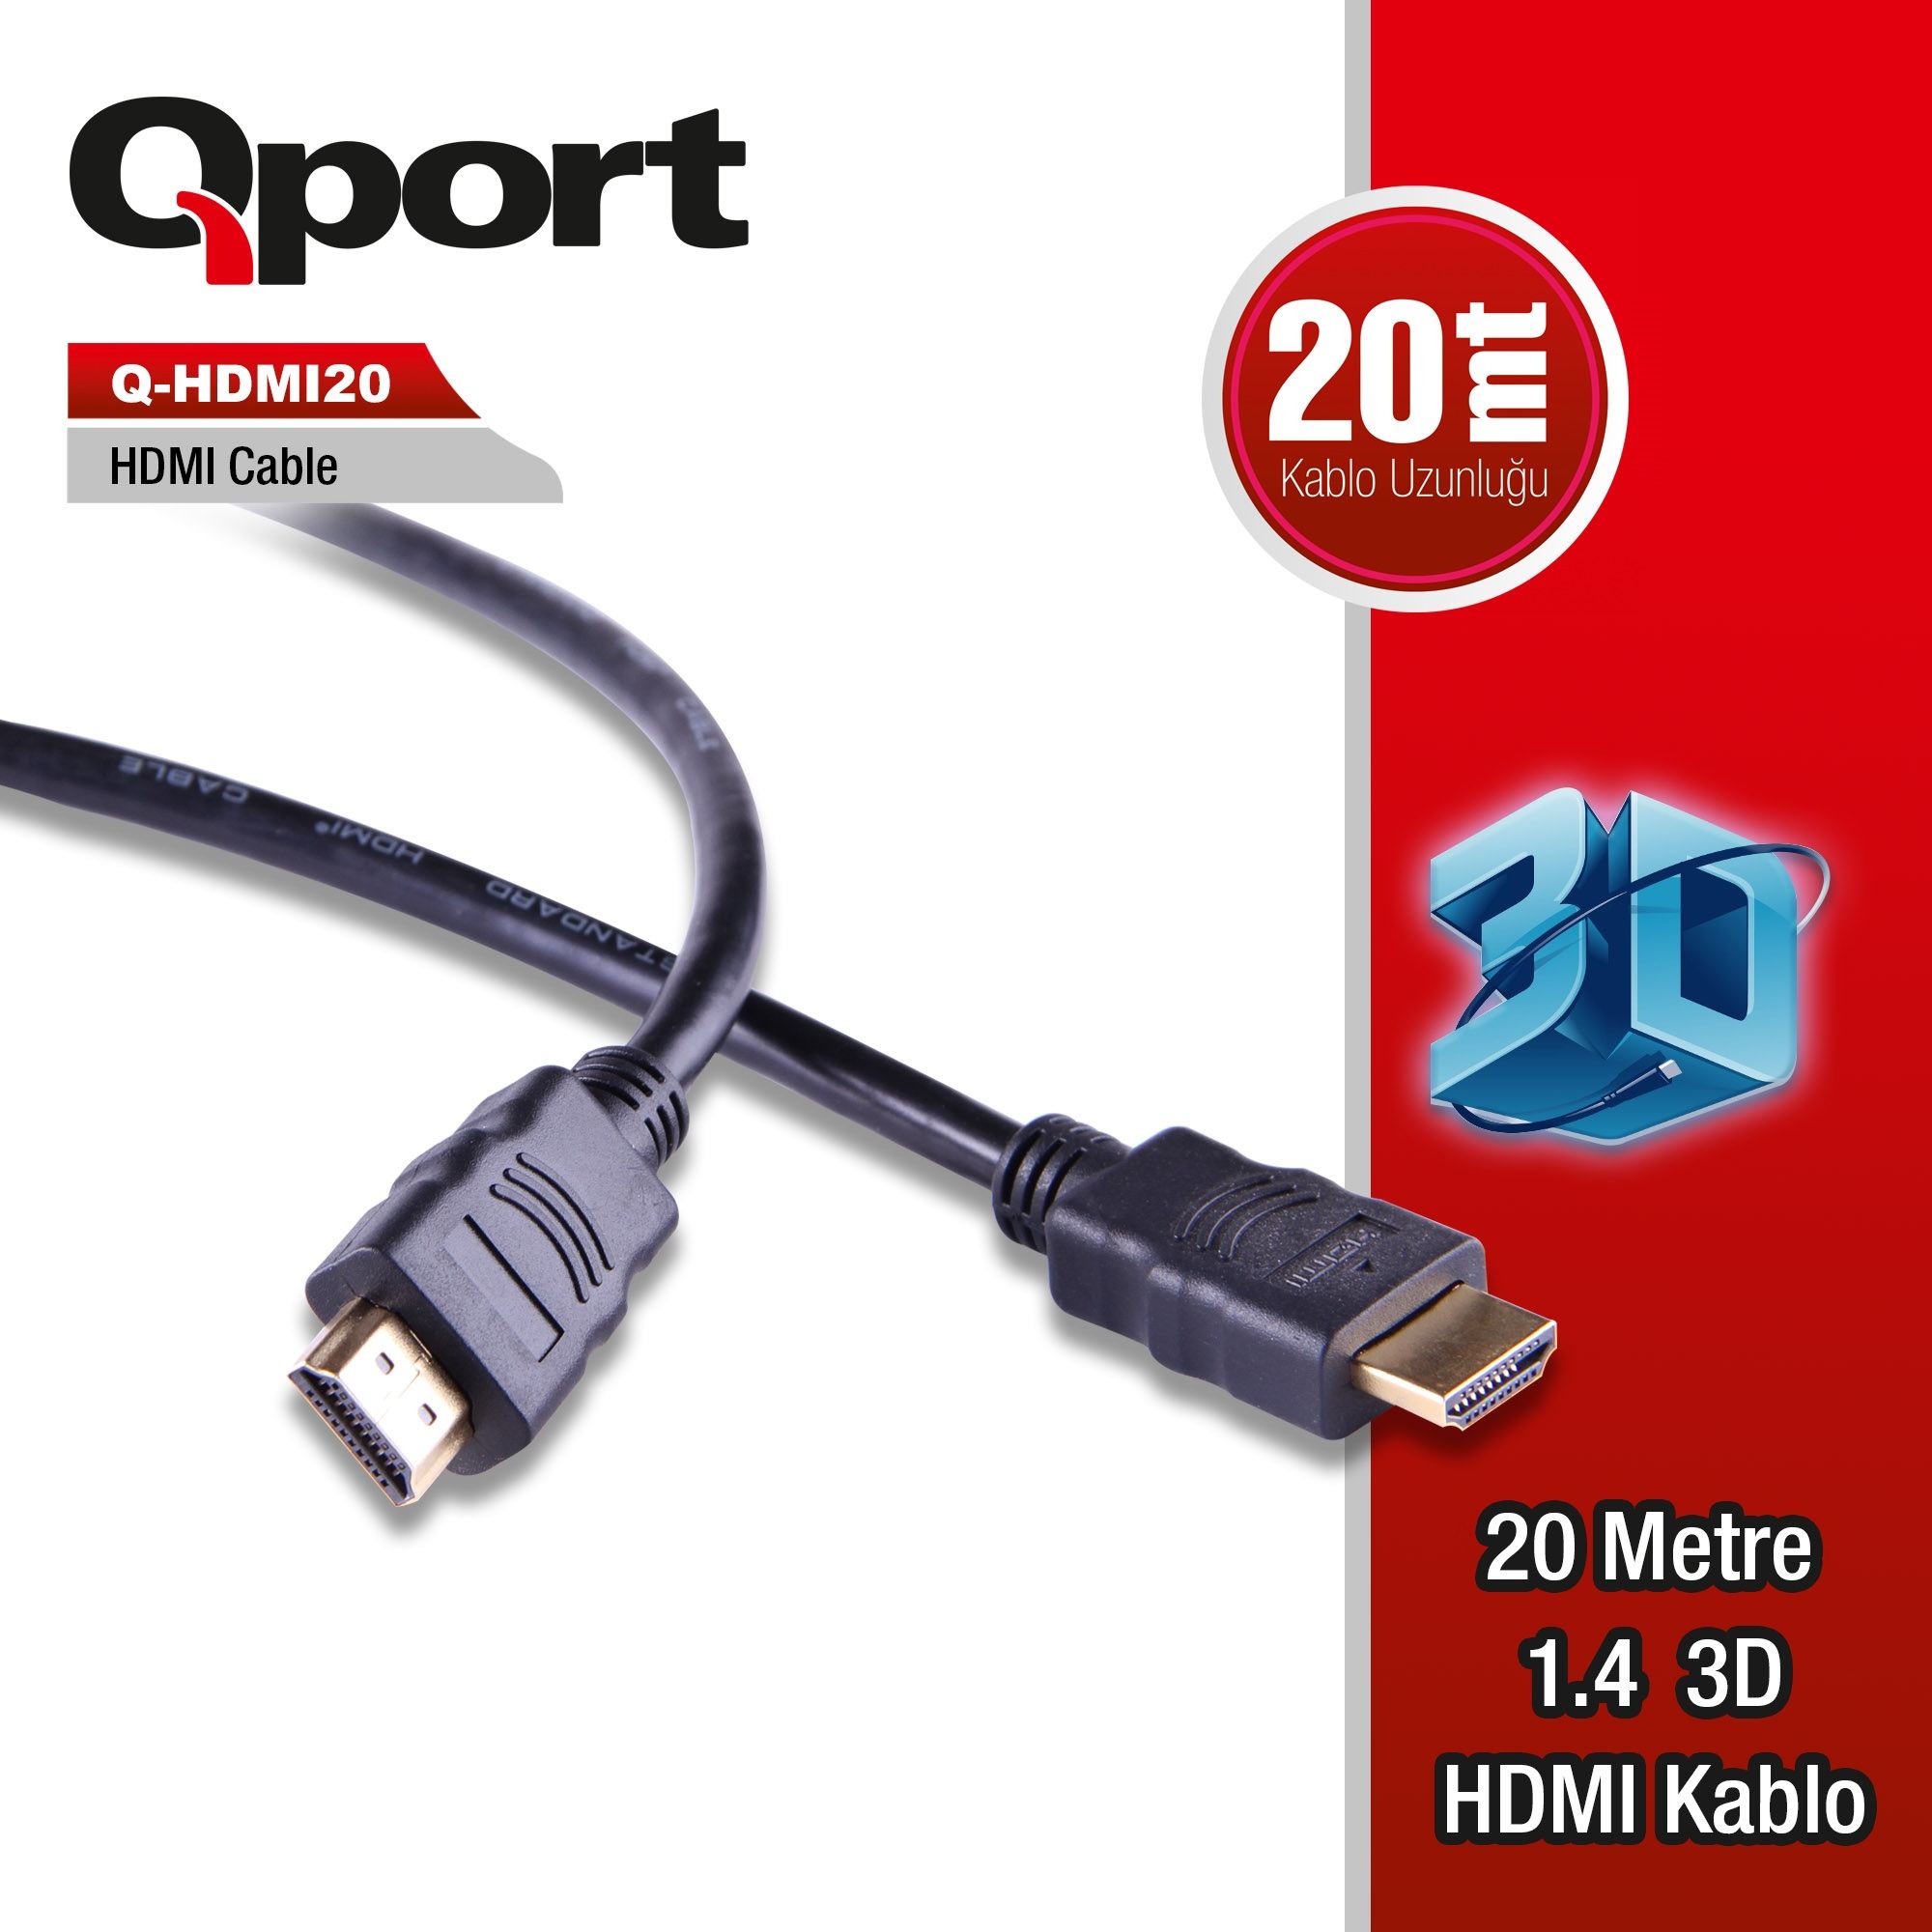 QPORT Q-HDMI20 HDMI KABLO 20MT Ver1.4 ALTIN UÇLU 3D